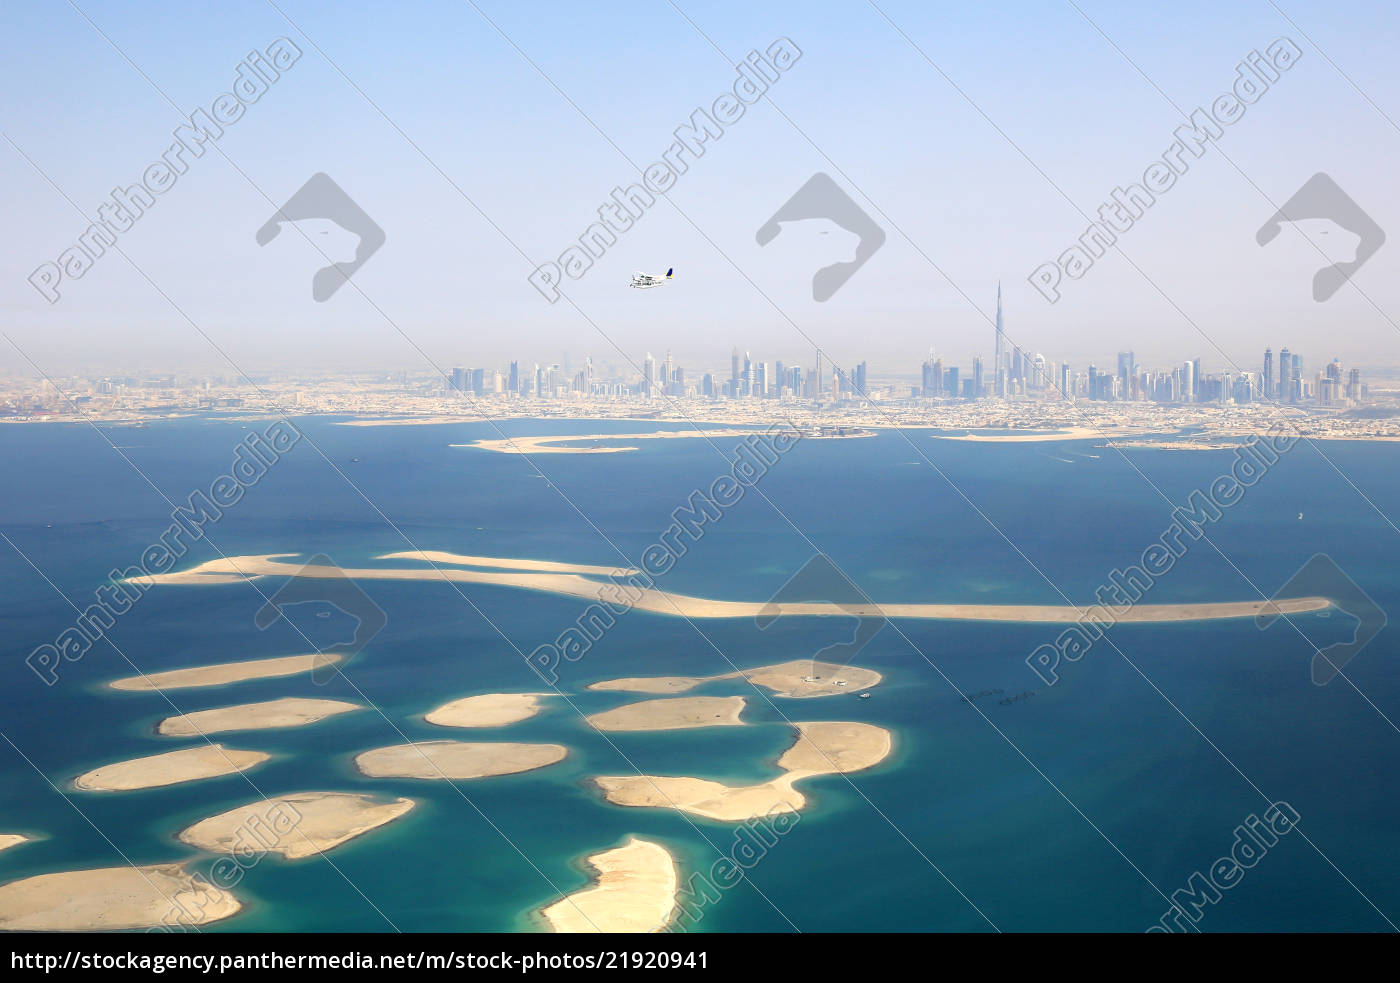 Dubai The World Welt Insel Inseln Burj Khalifa Lizenzfreies Bild Bildagentur Panthermedia